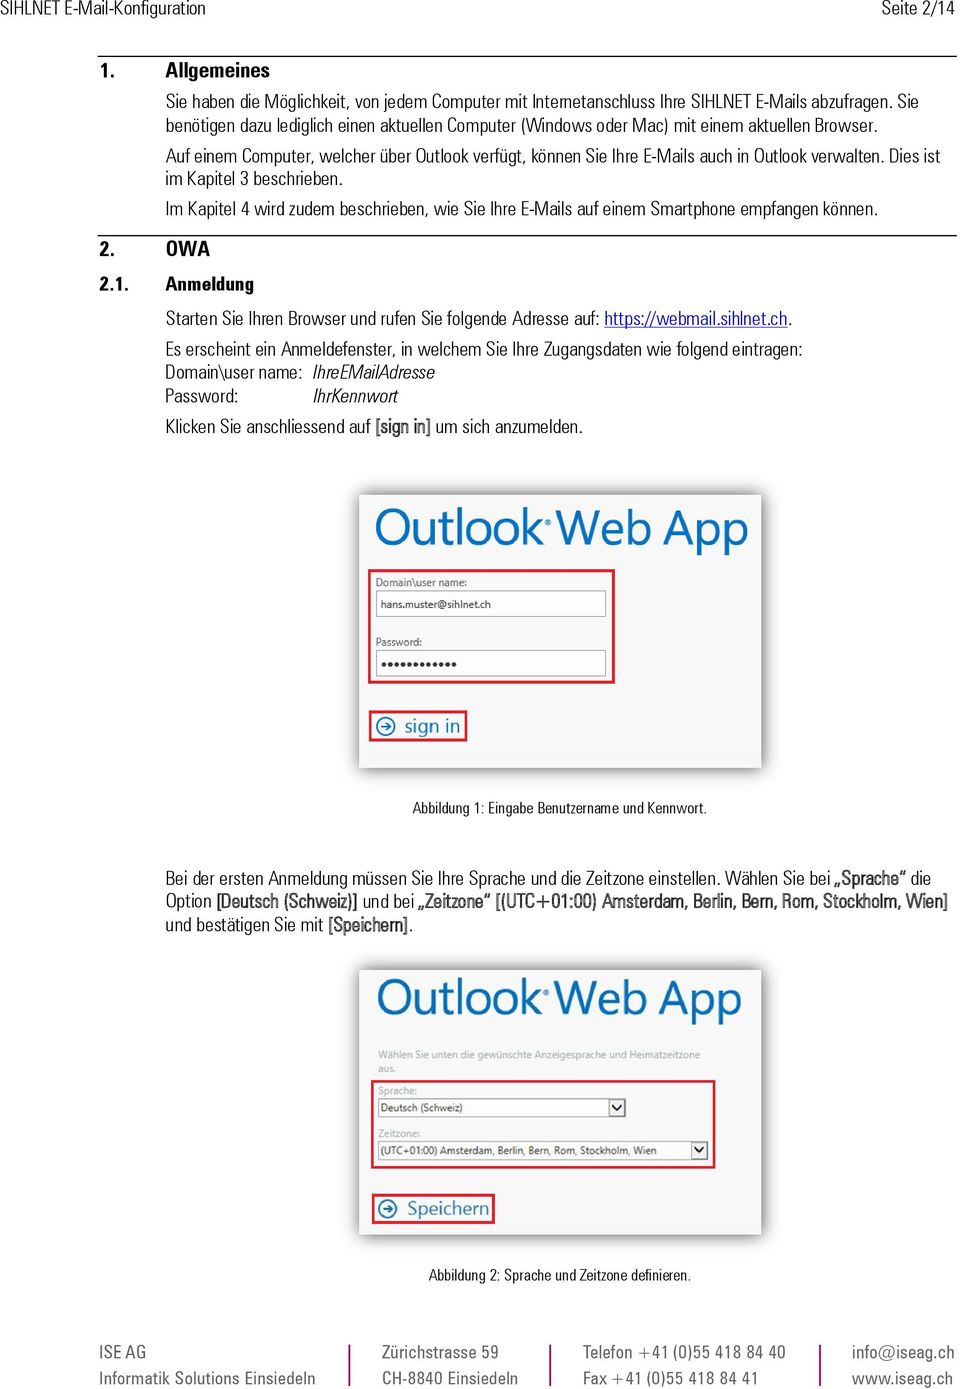 Auf einem Computer, welcher über Outlook verfügt, können Sie Ihre E-Mails auch in Outlook verwalten. Dies ist im Kapitel 3 beschrieben.